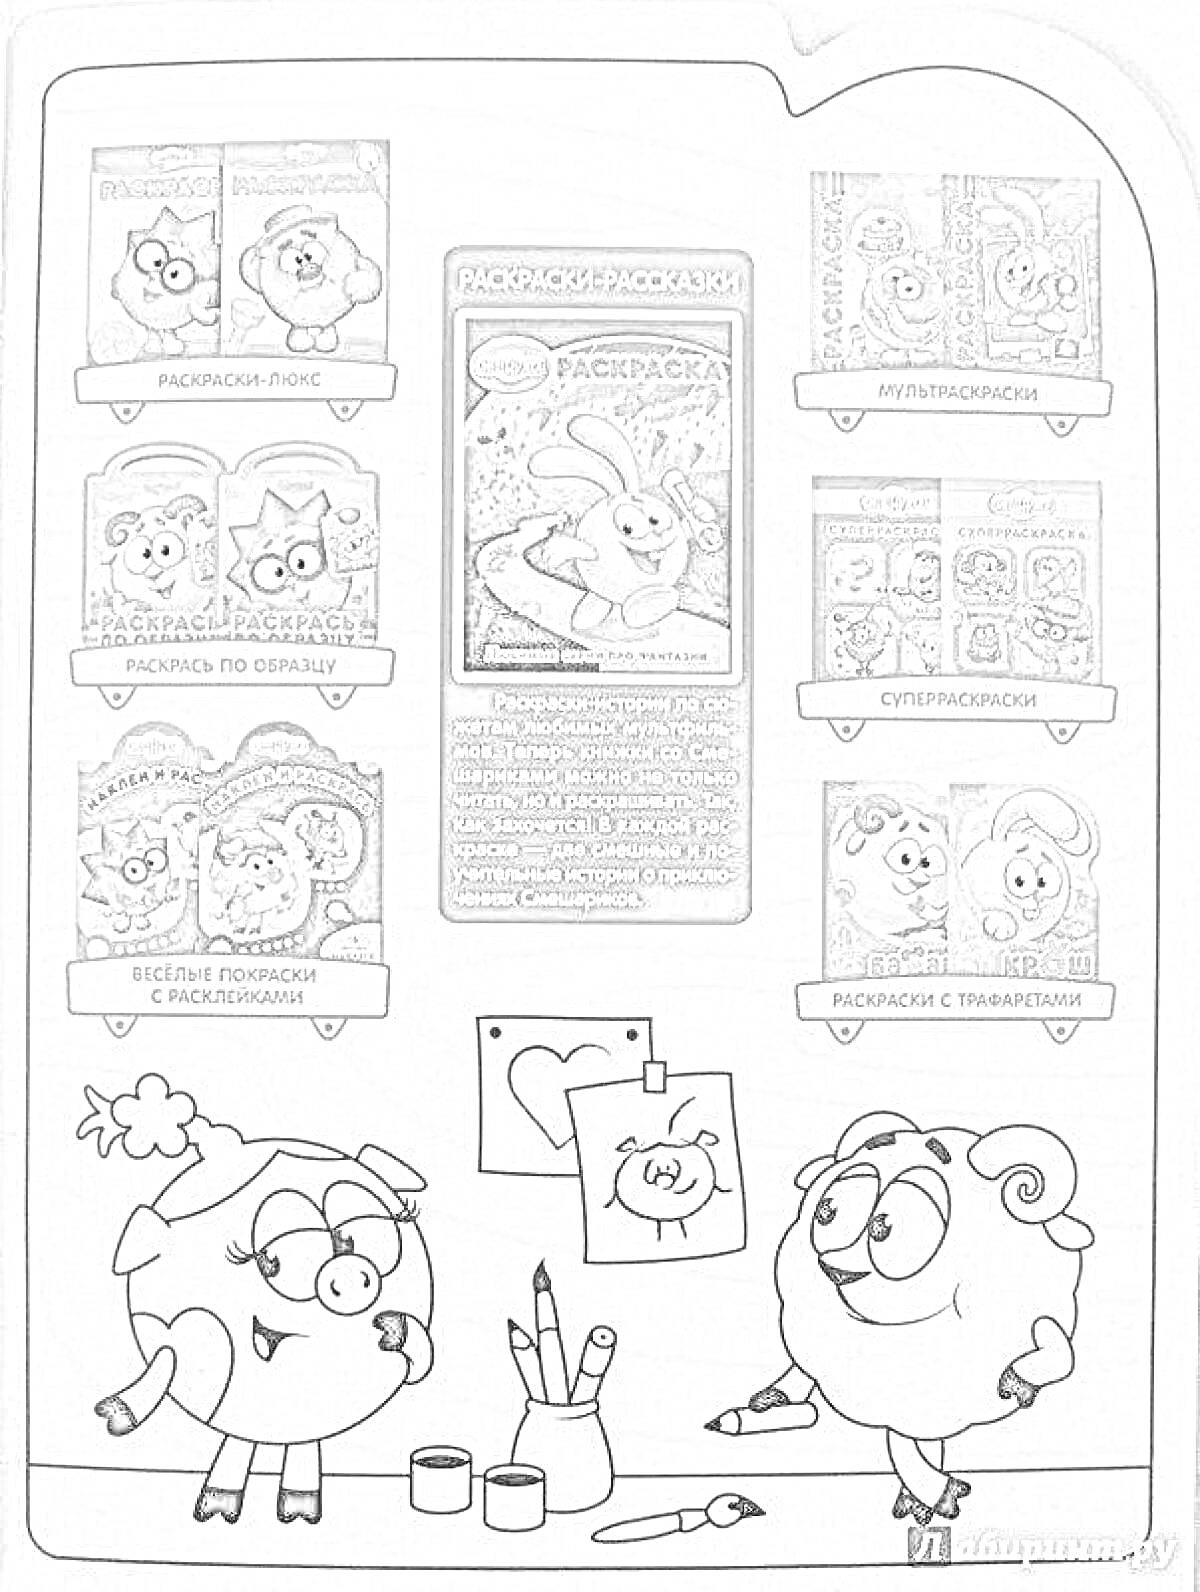 Раскраска Смешарики песочная раскраска с персонажами Нюша и Бараш, рядом художественные принадлежности (карандаши, краски, кисточка, бумага с рисунком)